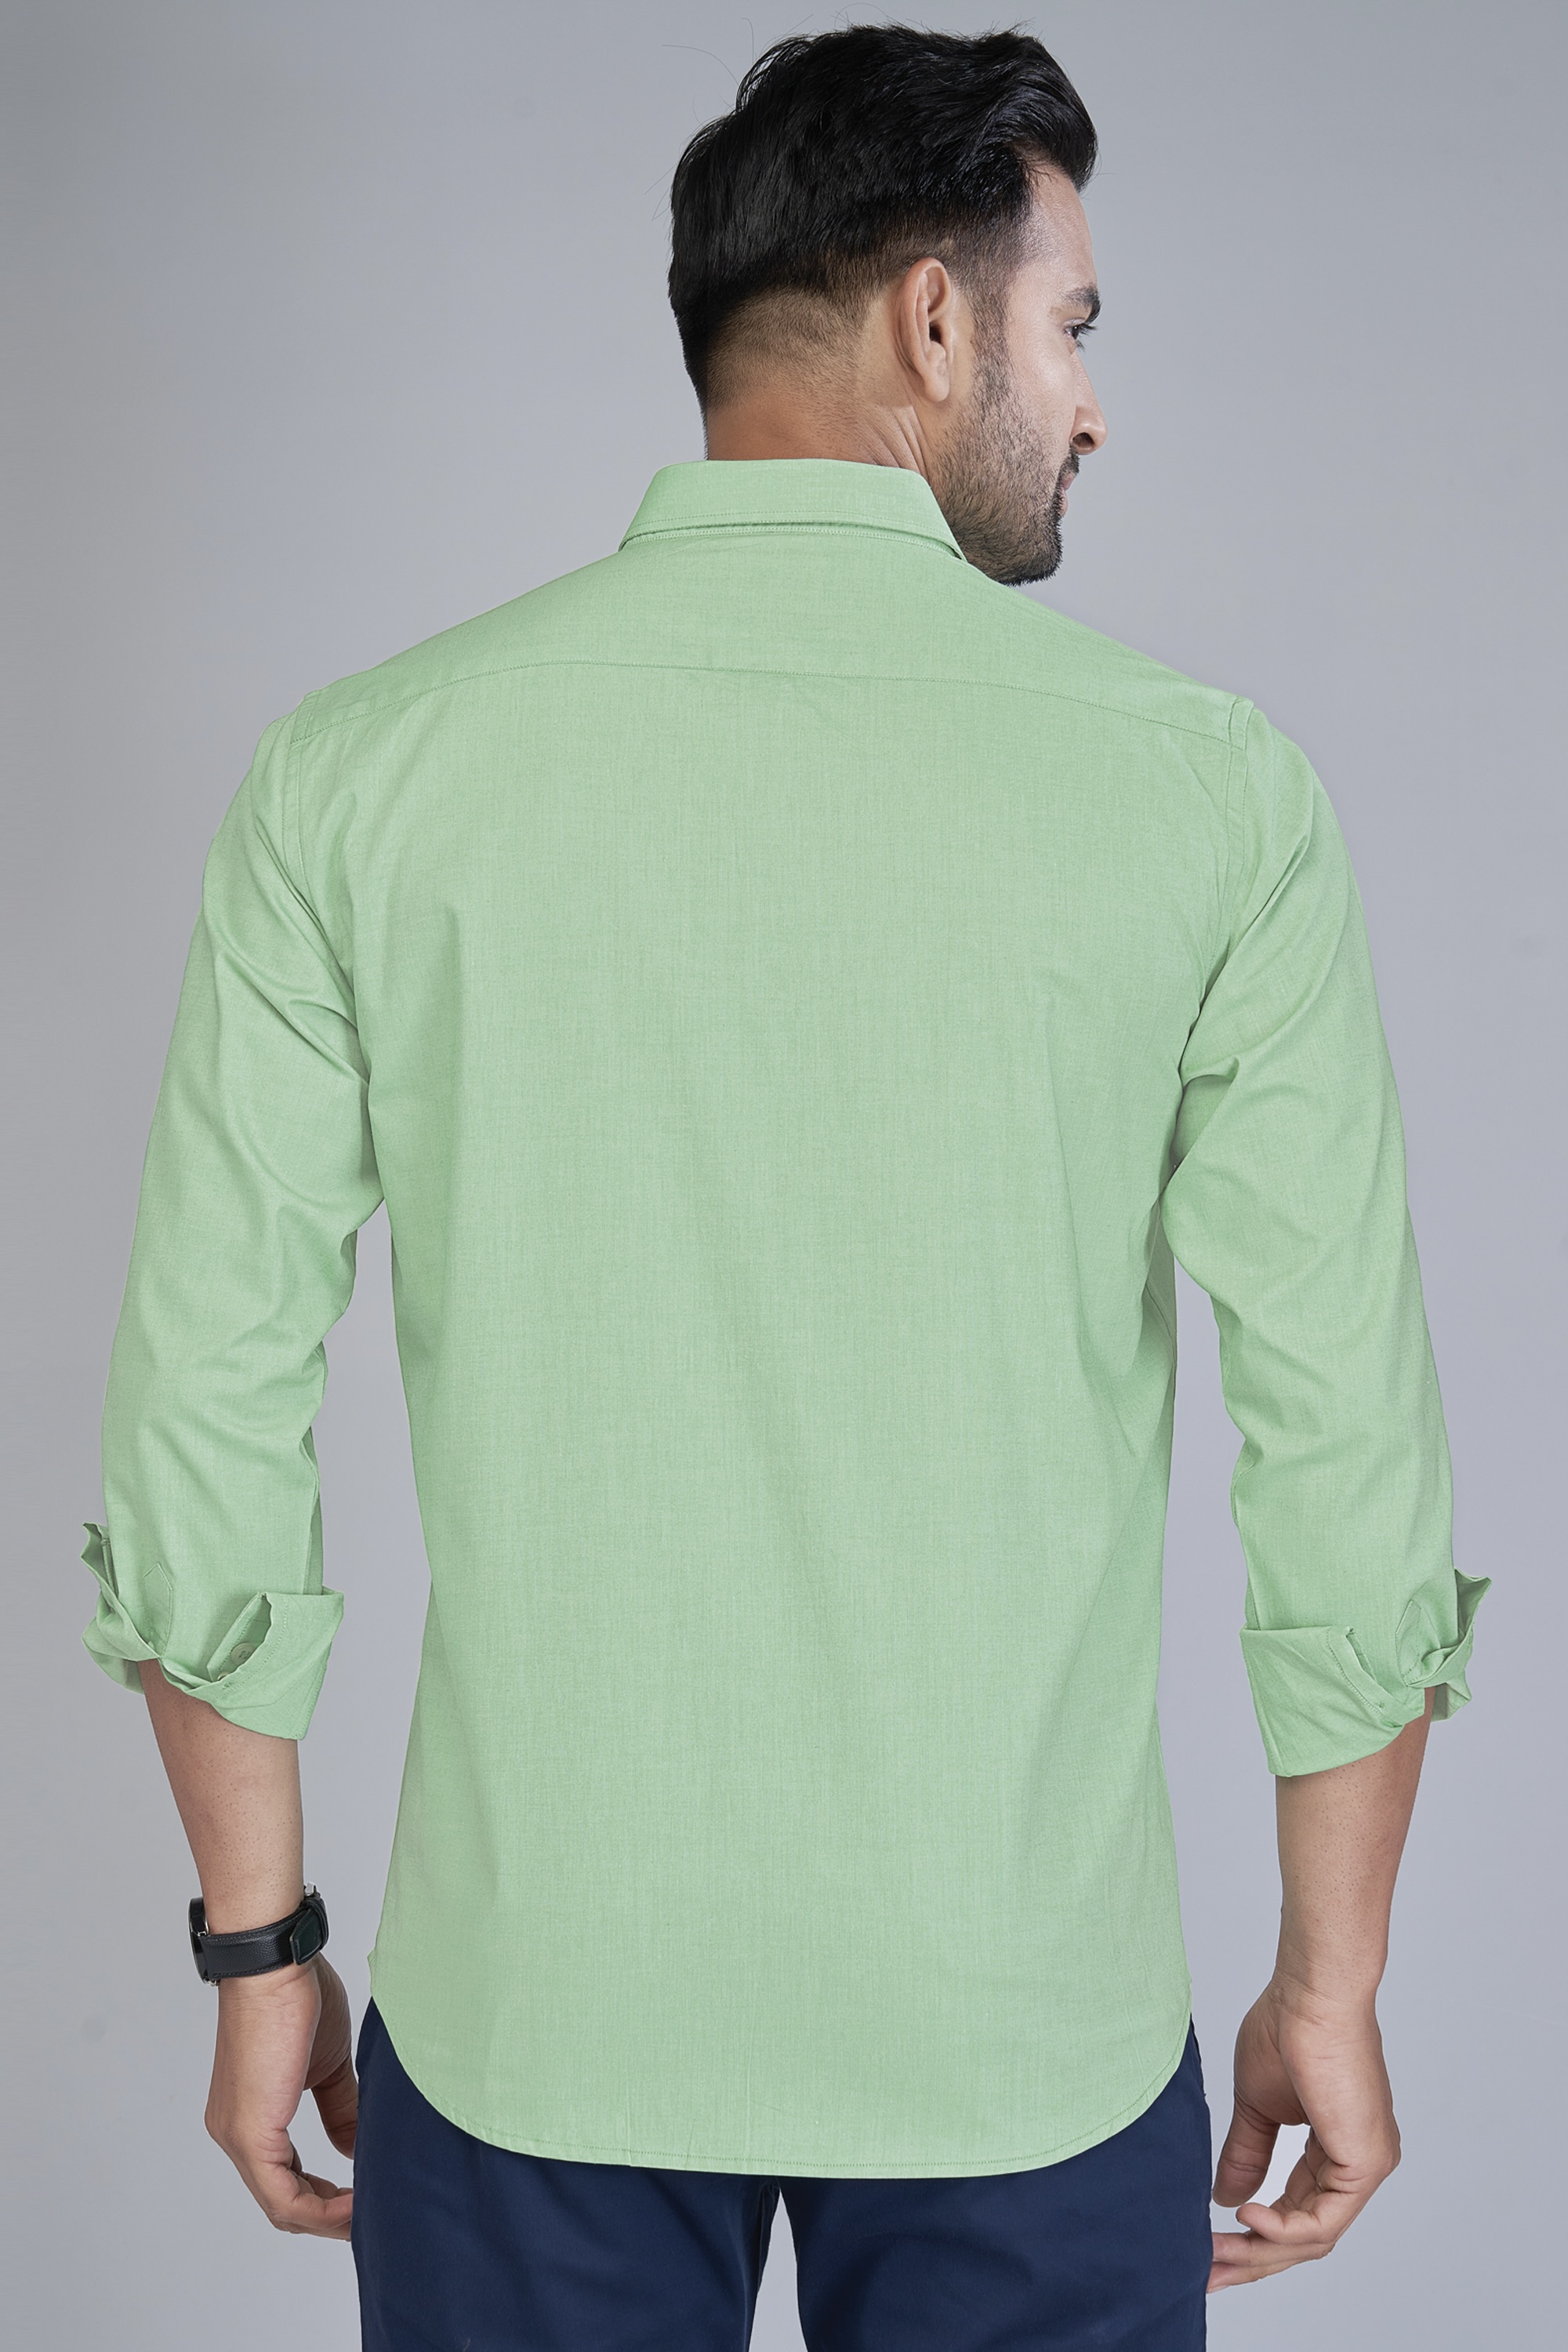 Cotton Green Shirt for Men